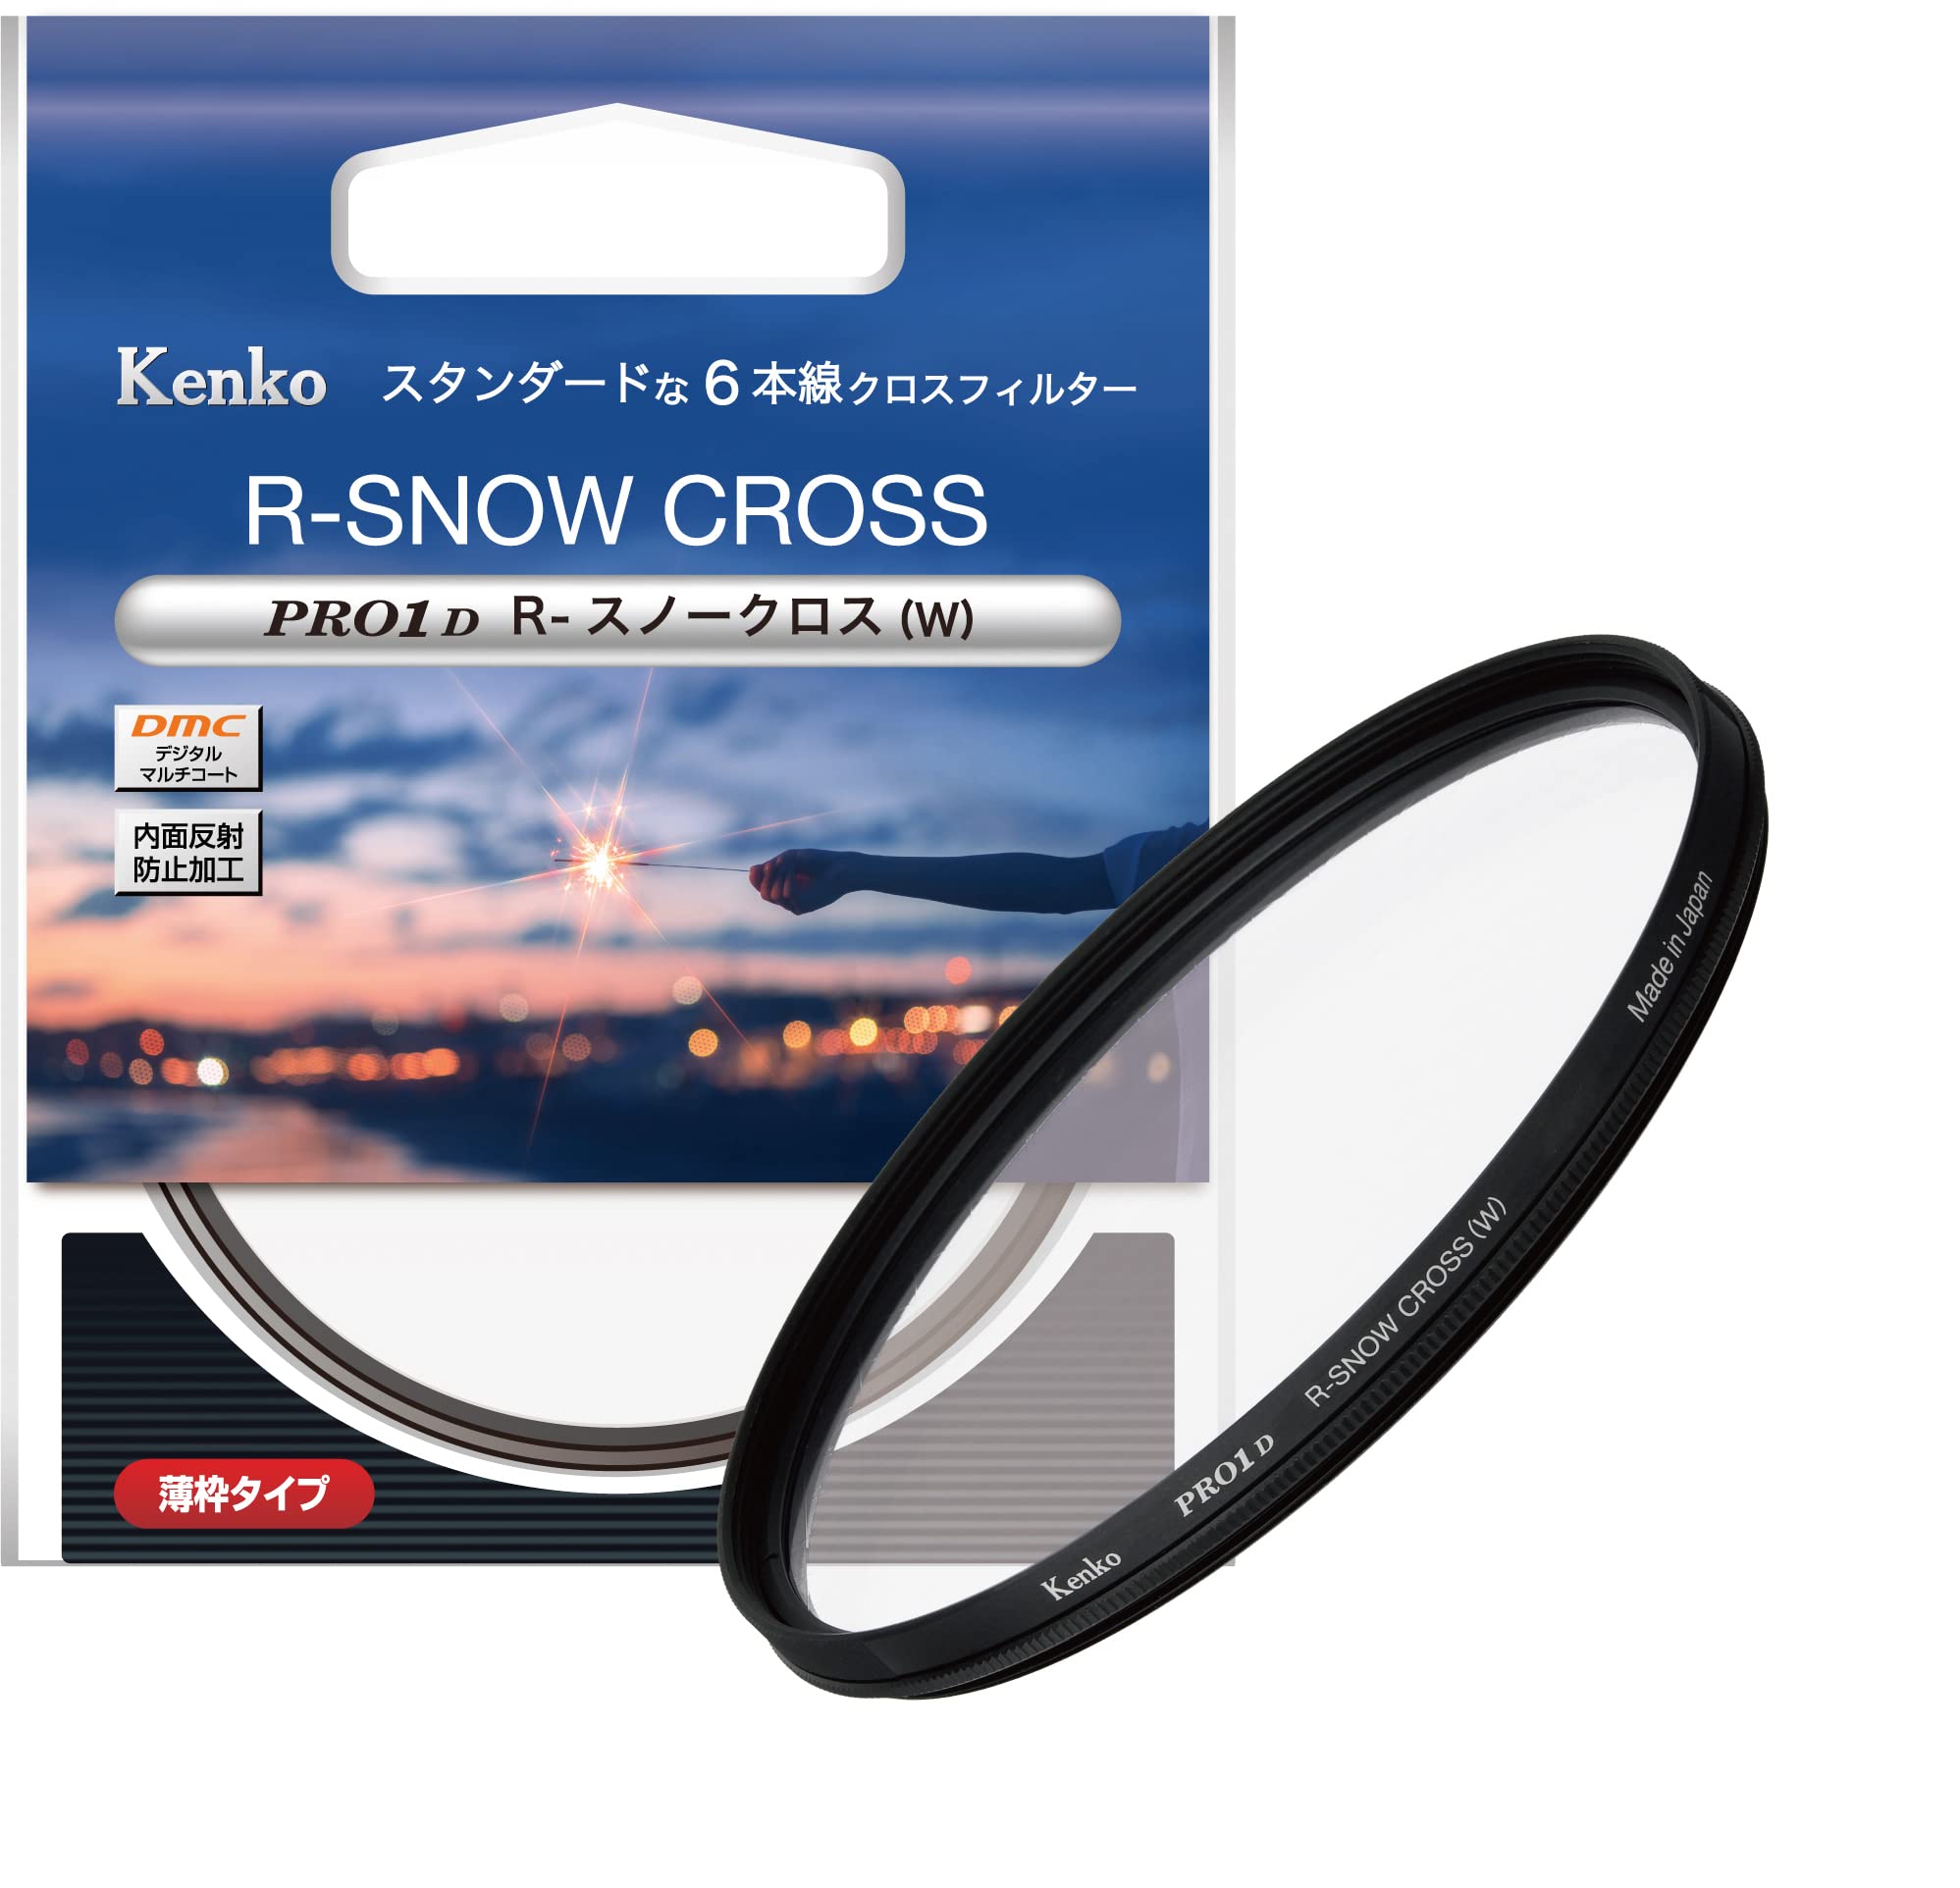 ケンコー(Kenko) クロスフィルター PRO1D R-スノークロス (W) 55mm 6本クロス効果 夜景・イルミネーション・光の演出に 薄枠 825303特別